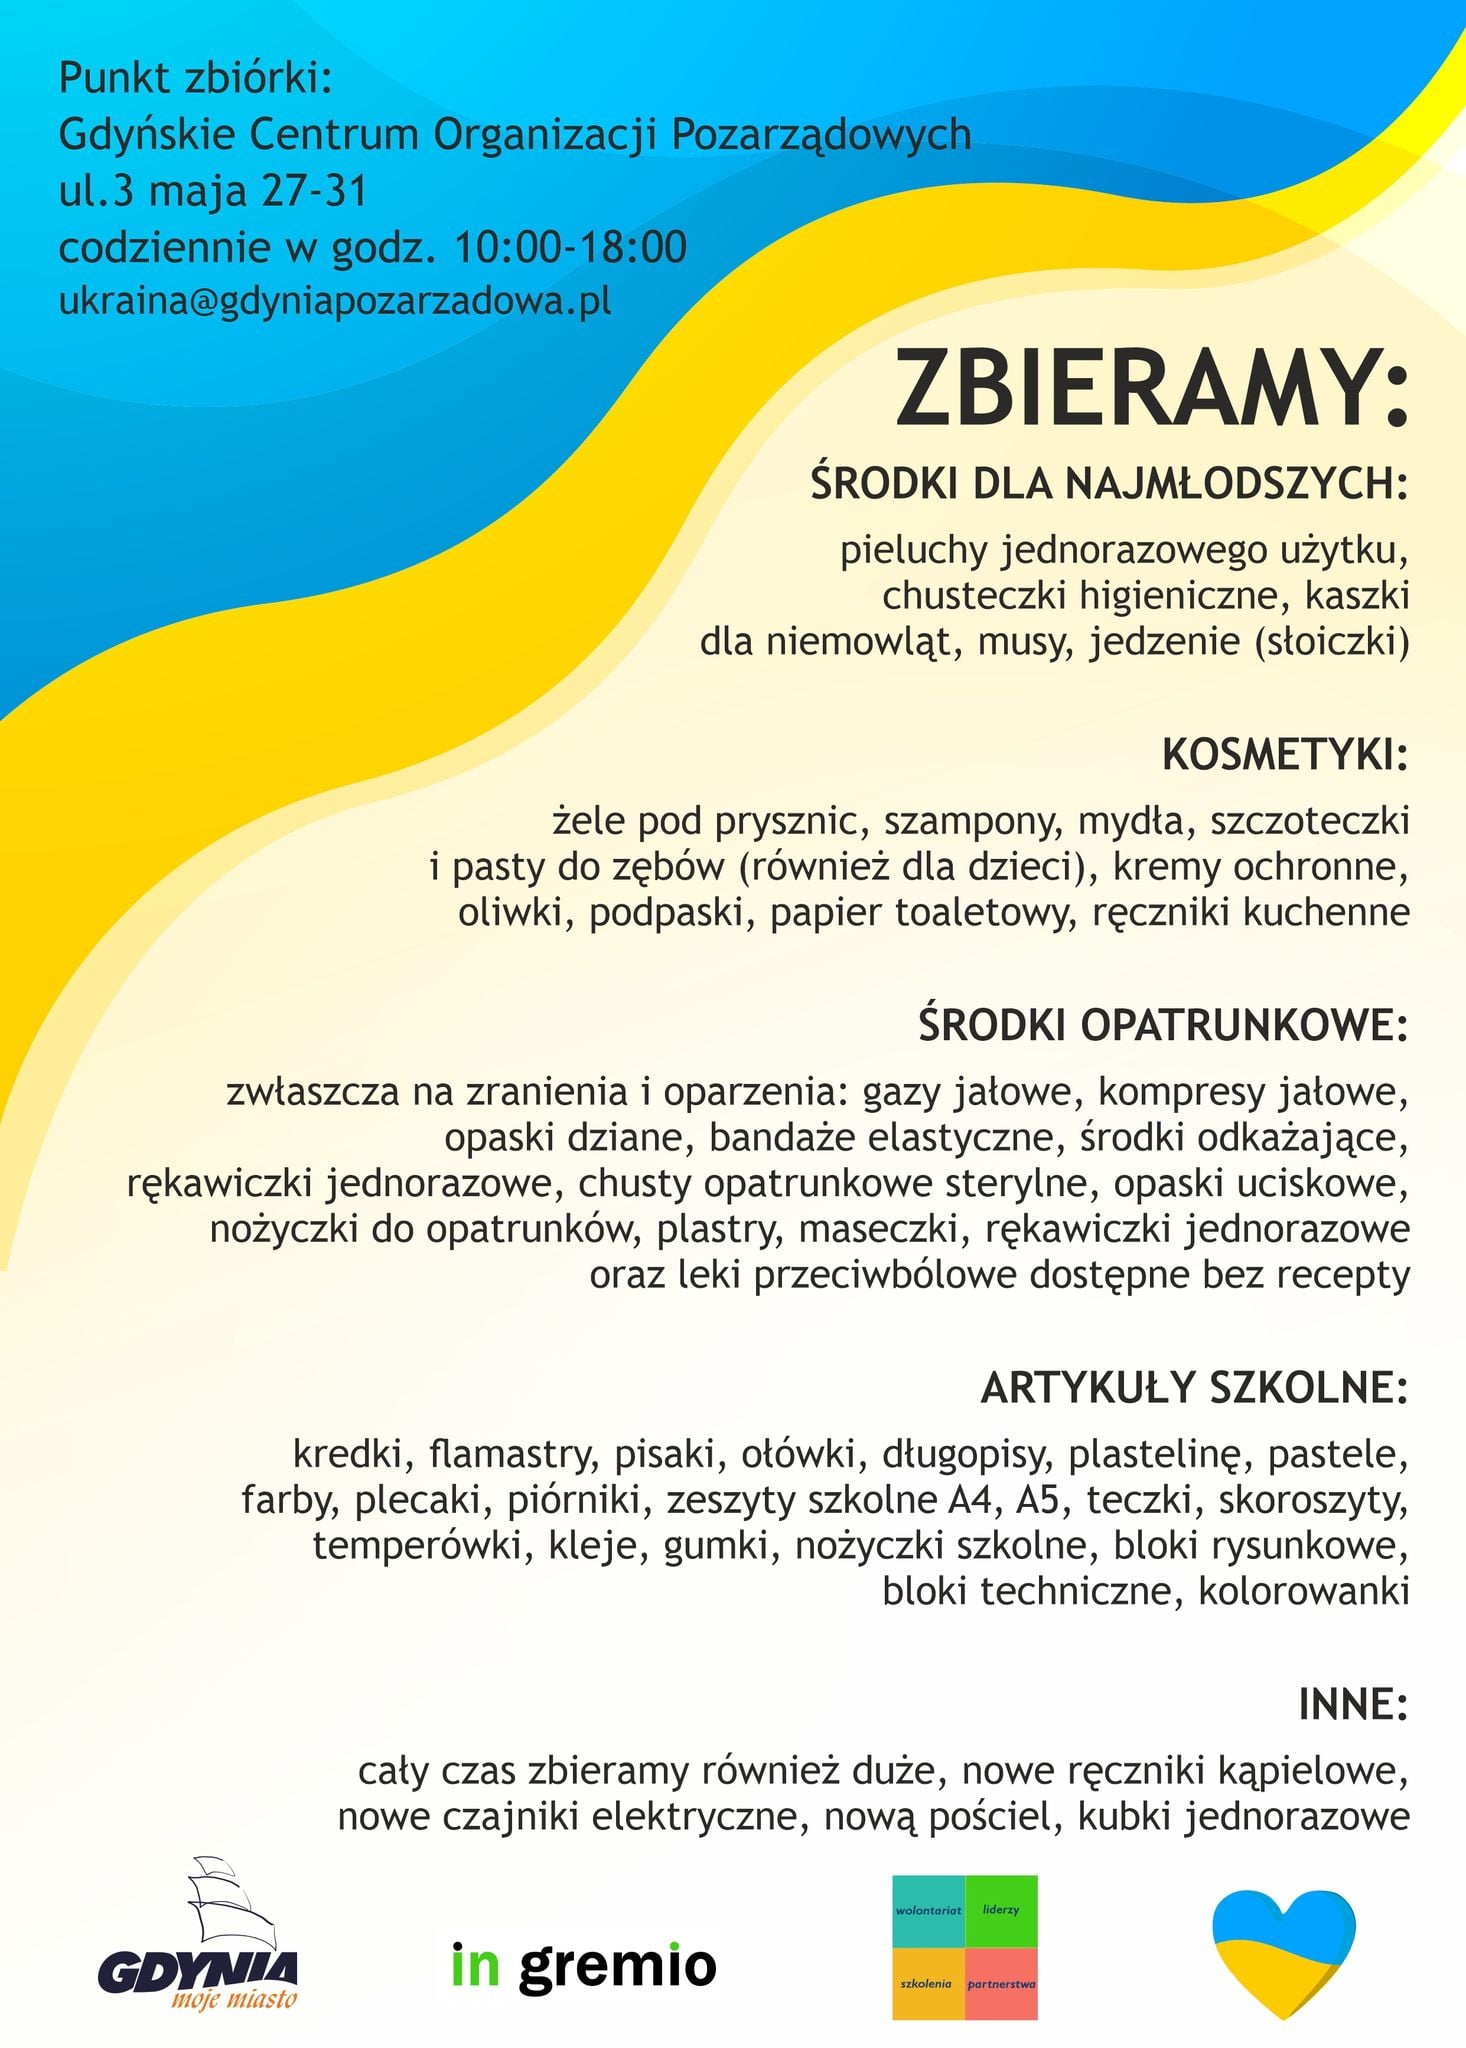 Plakat Gdyńskiego Centrum Organizacji Pozarządowych dotyczący zbiórki darów dla Ukrainy